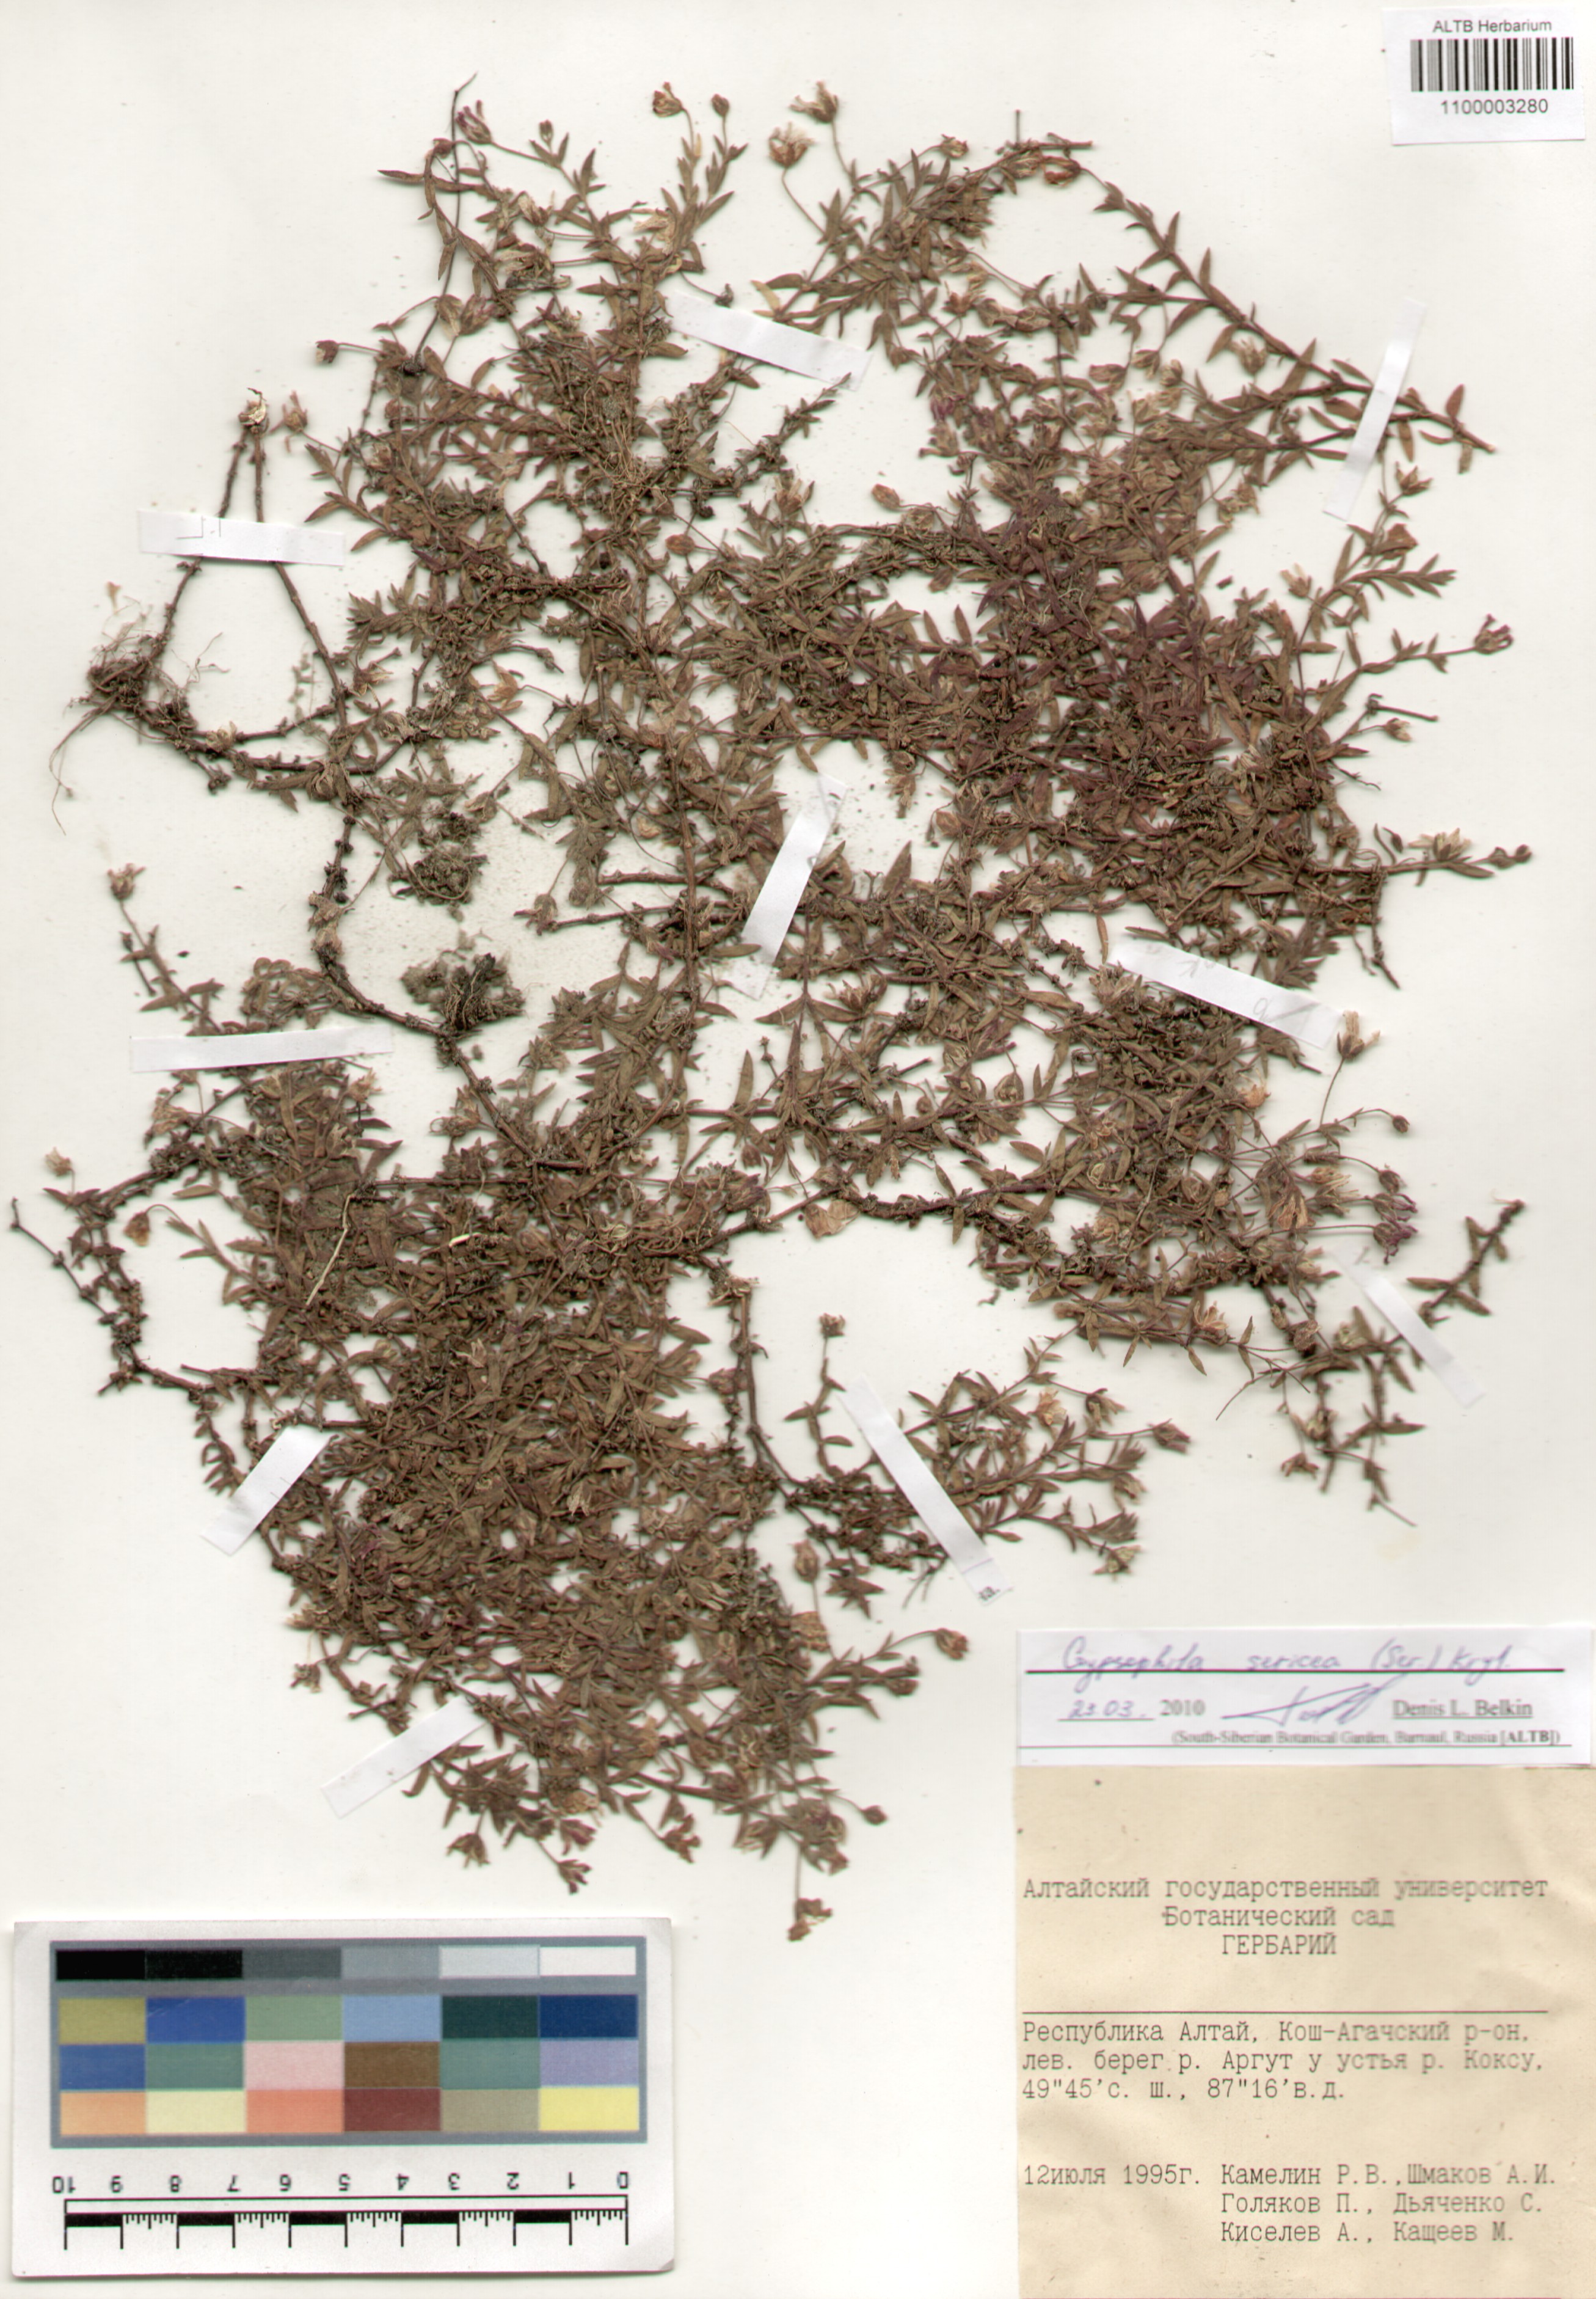 Caryophyllaceae,Gypsophila sericea (Ser.) Kryl.